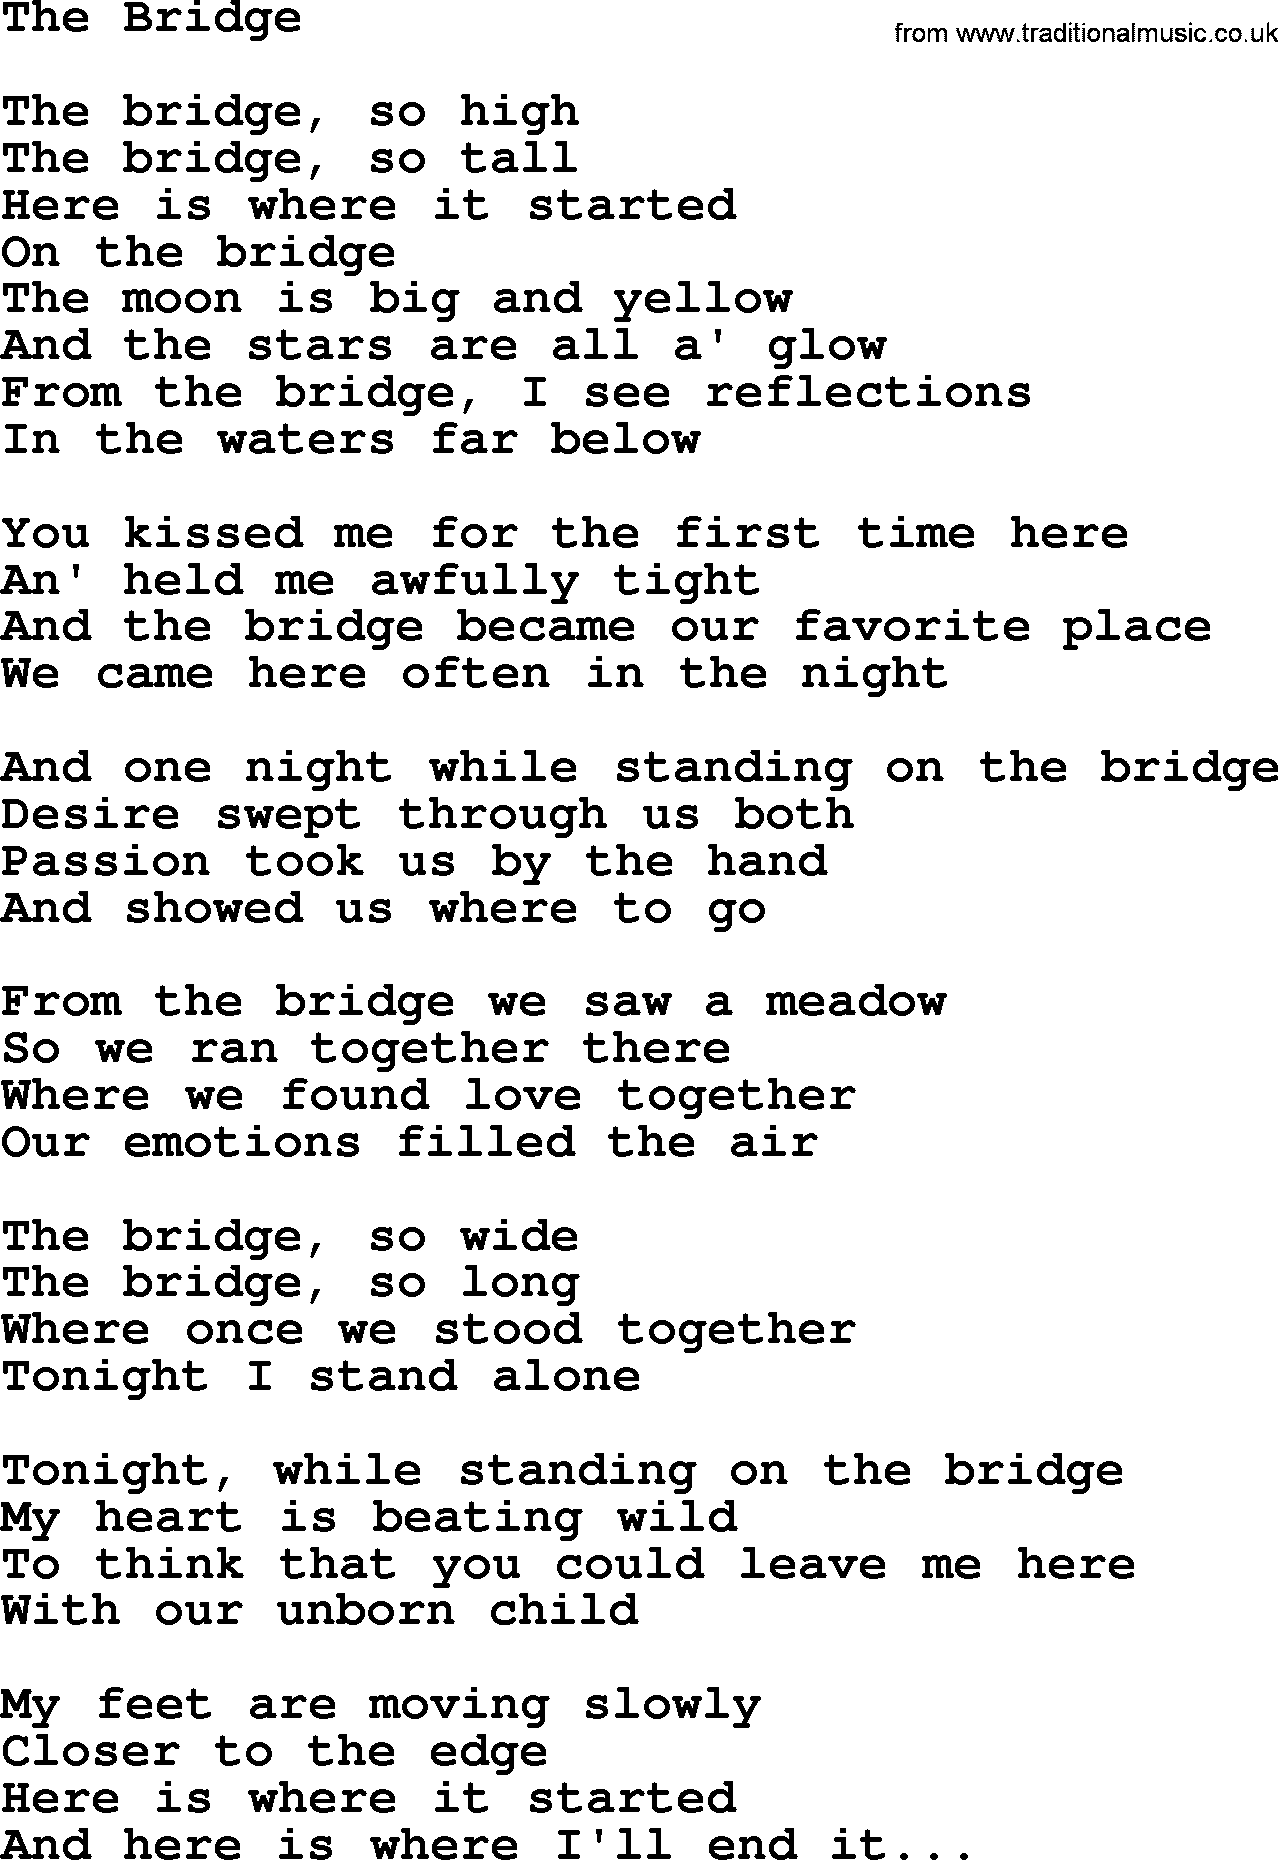 Dolly Parton song The Bridge.txt lyrics